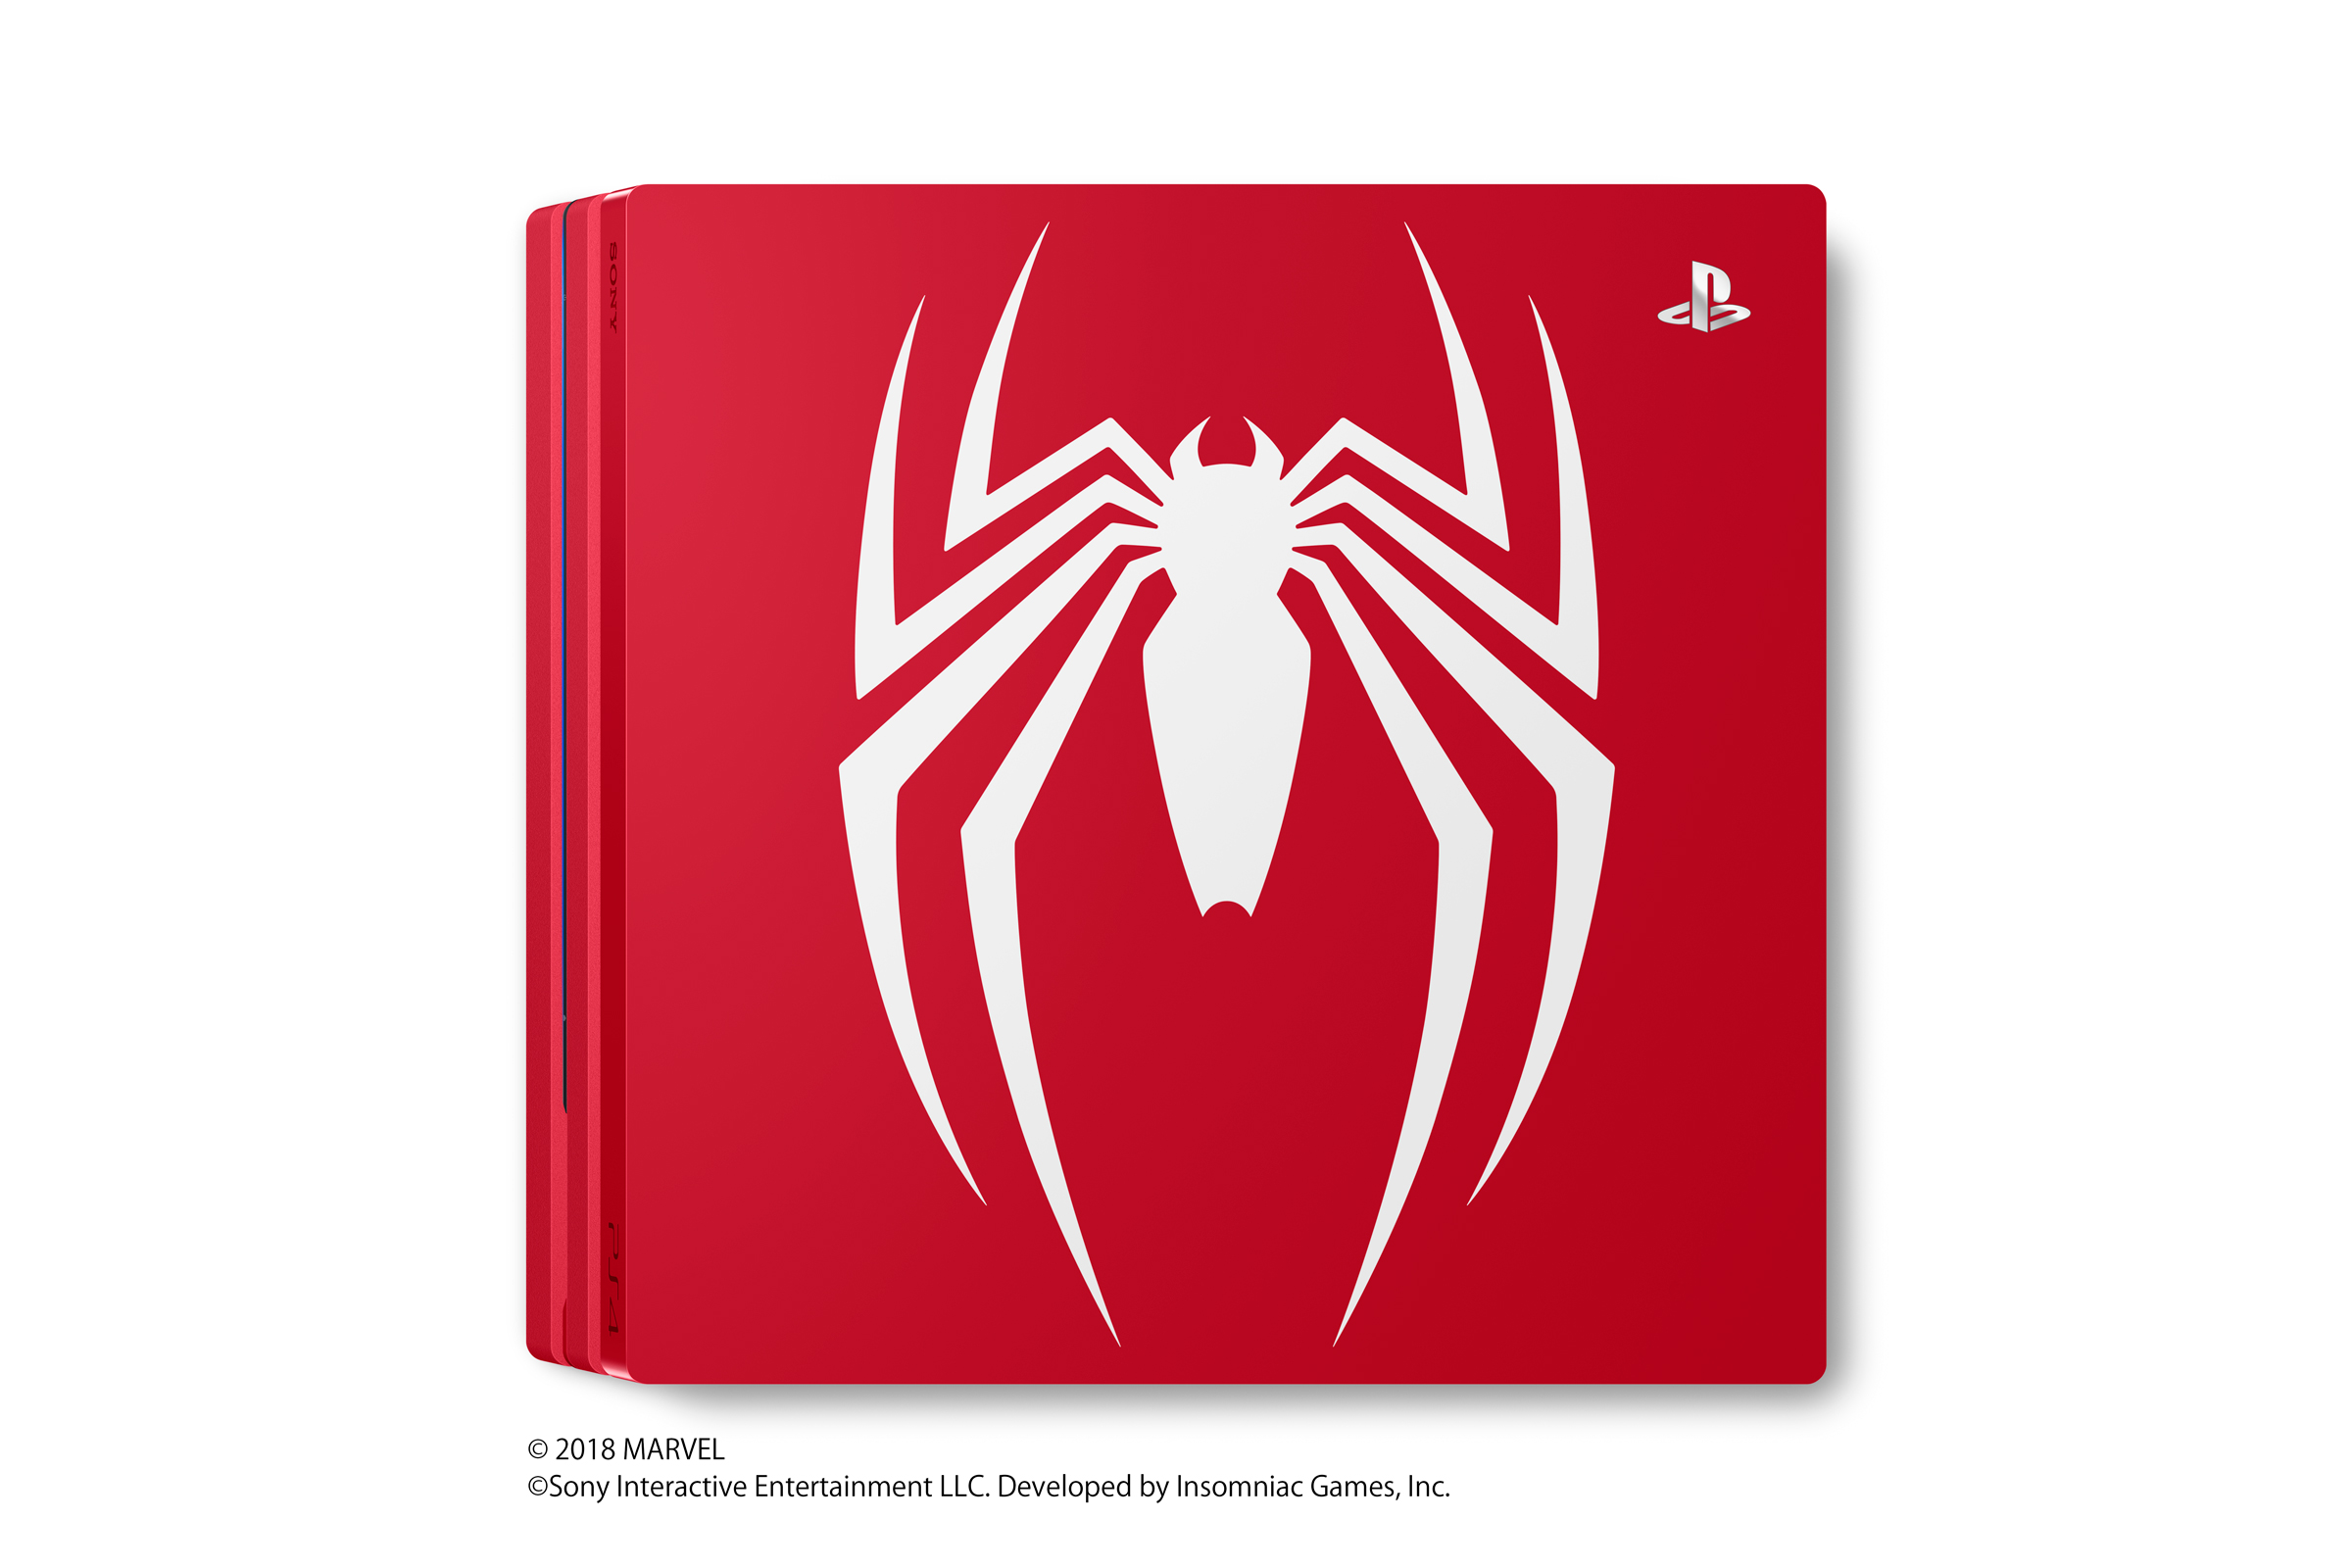 Cậnh cảnh vẻ đẹp cuốn hút của chiếc PS4 Pro phiên bản Spiderman – nShop -  Game & Hobby